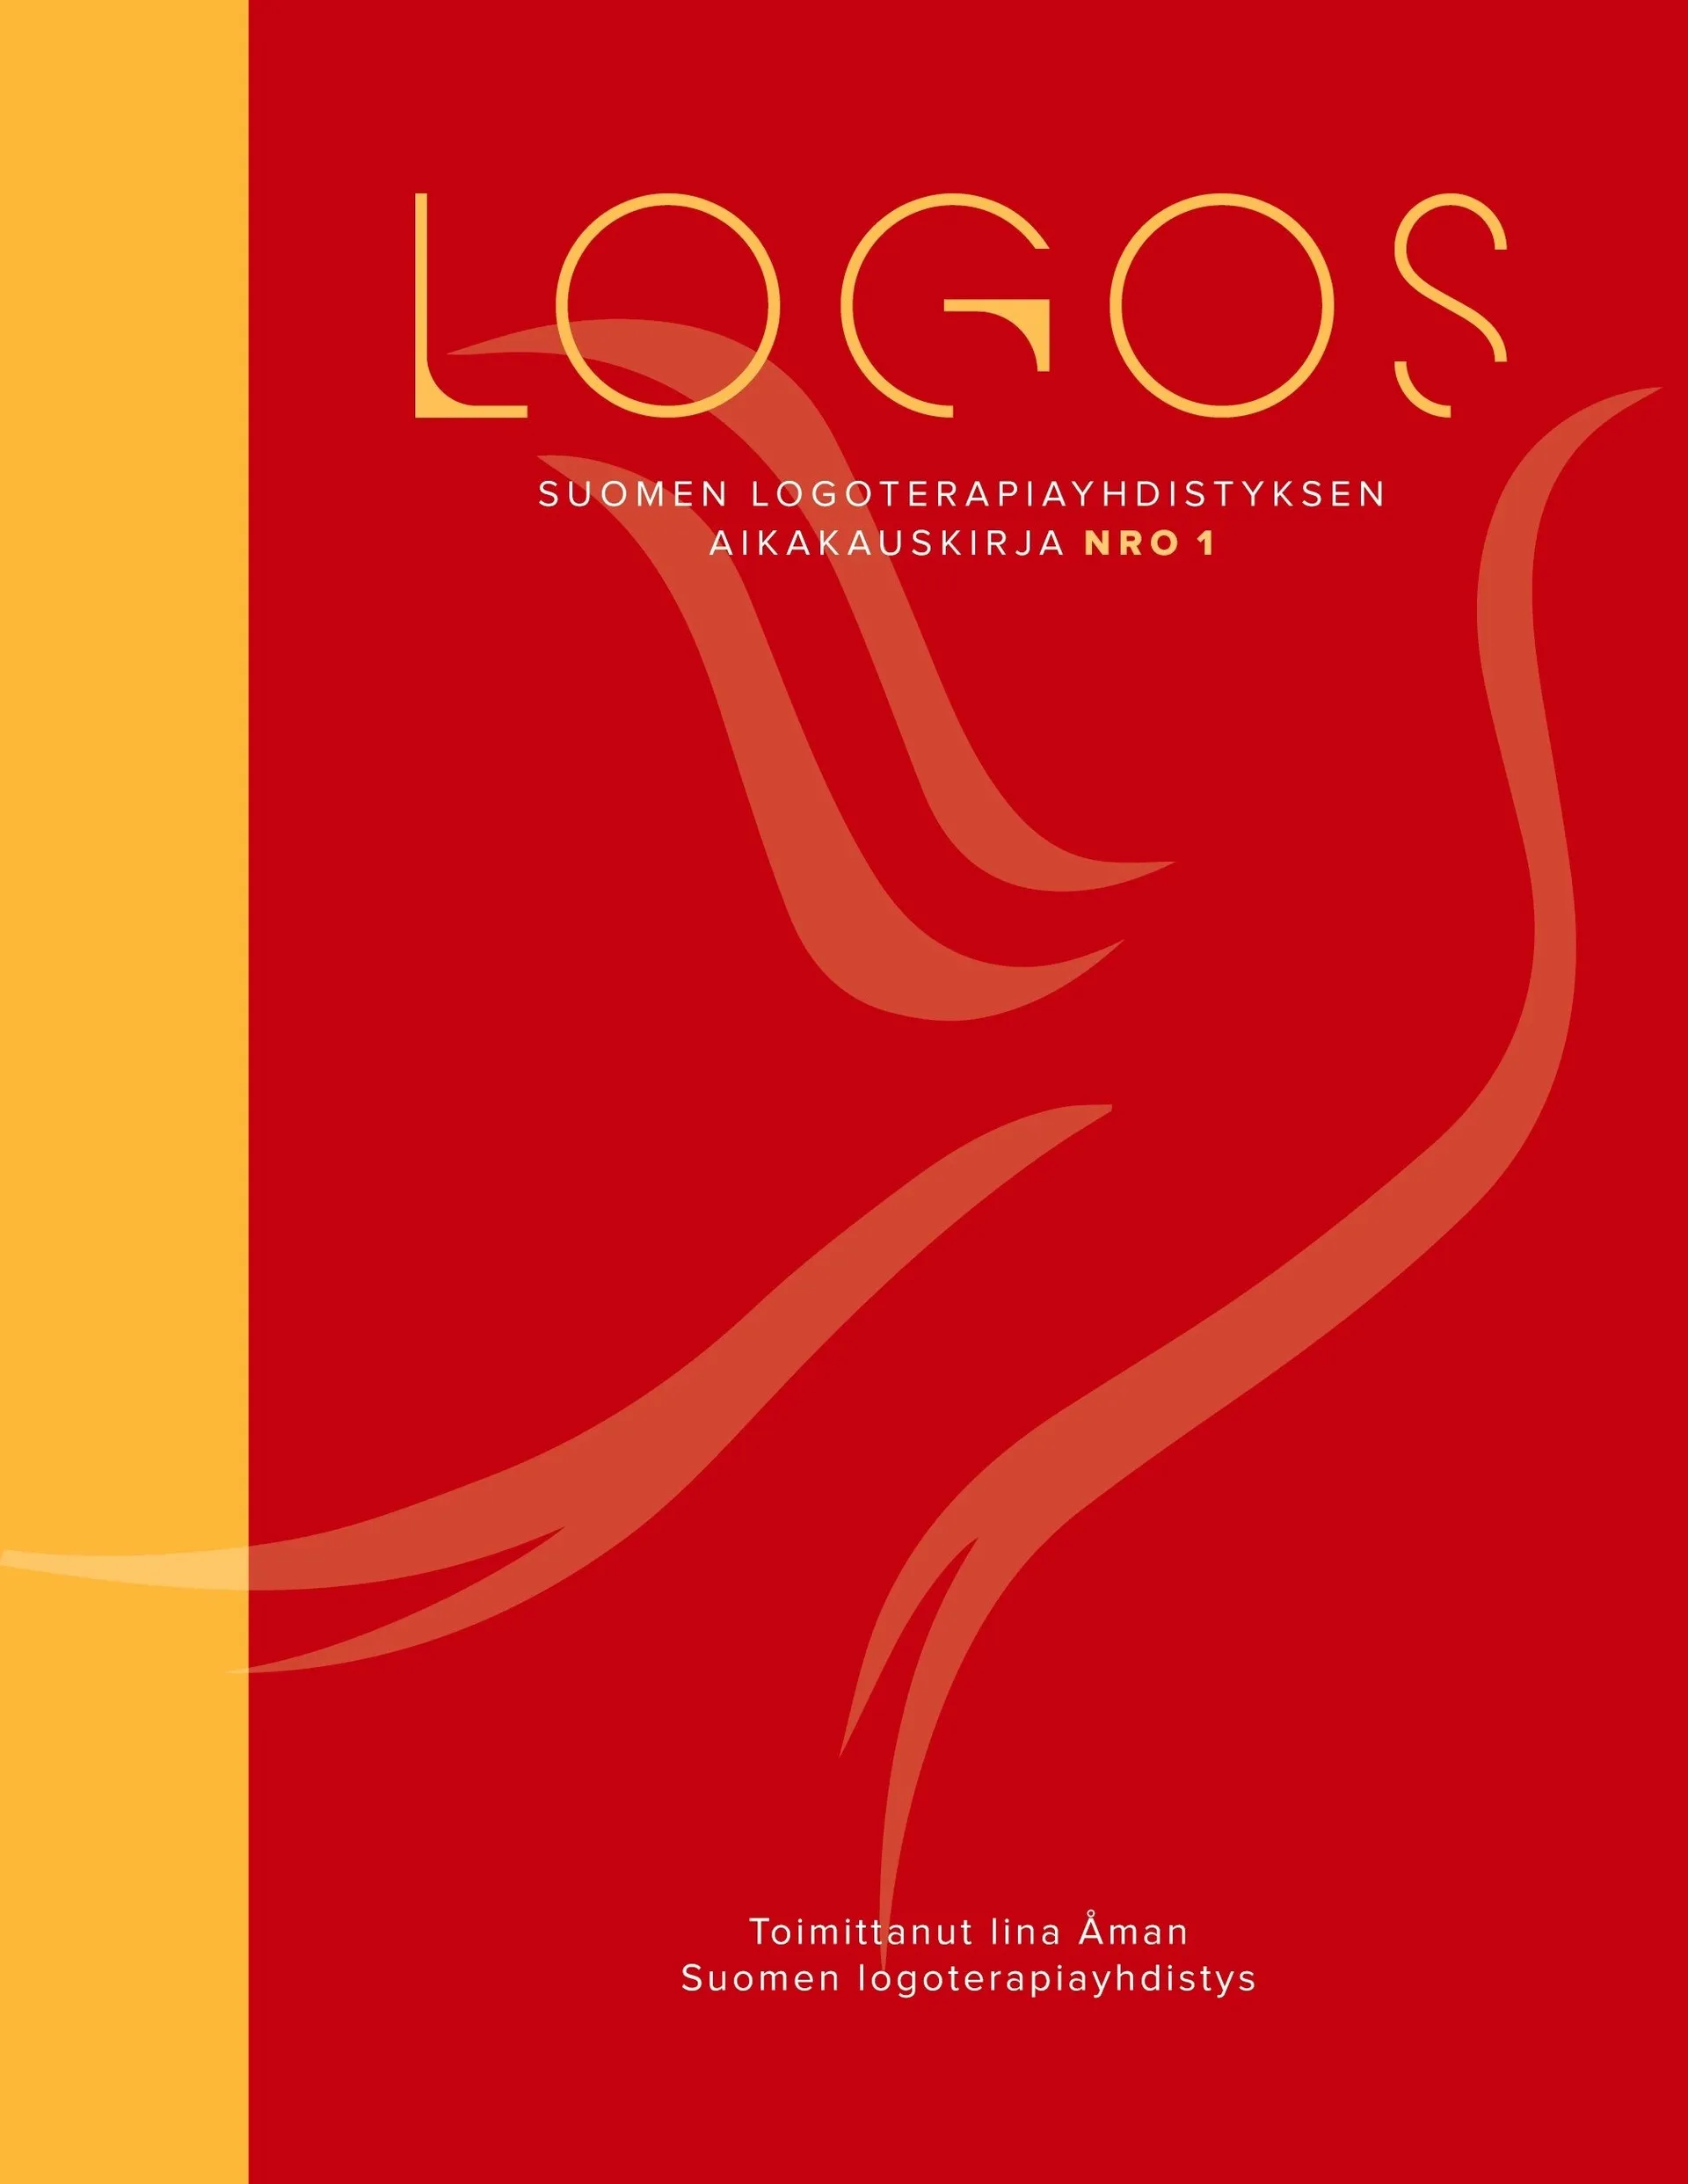 Logos - Suomen logoterapiayhdistyksen aikakauskirja nro 1